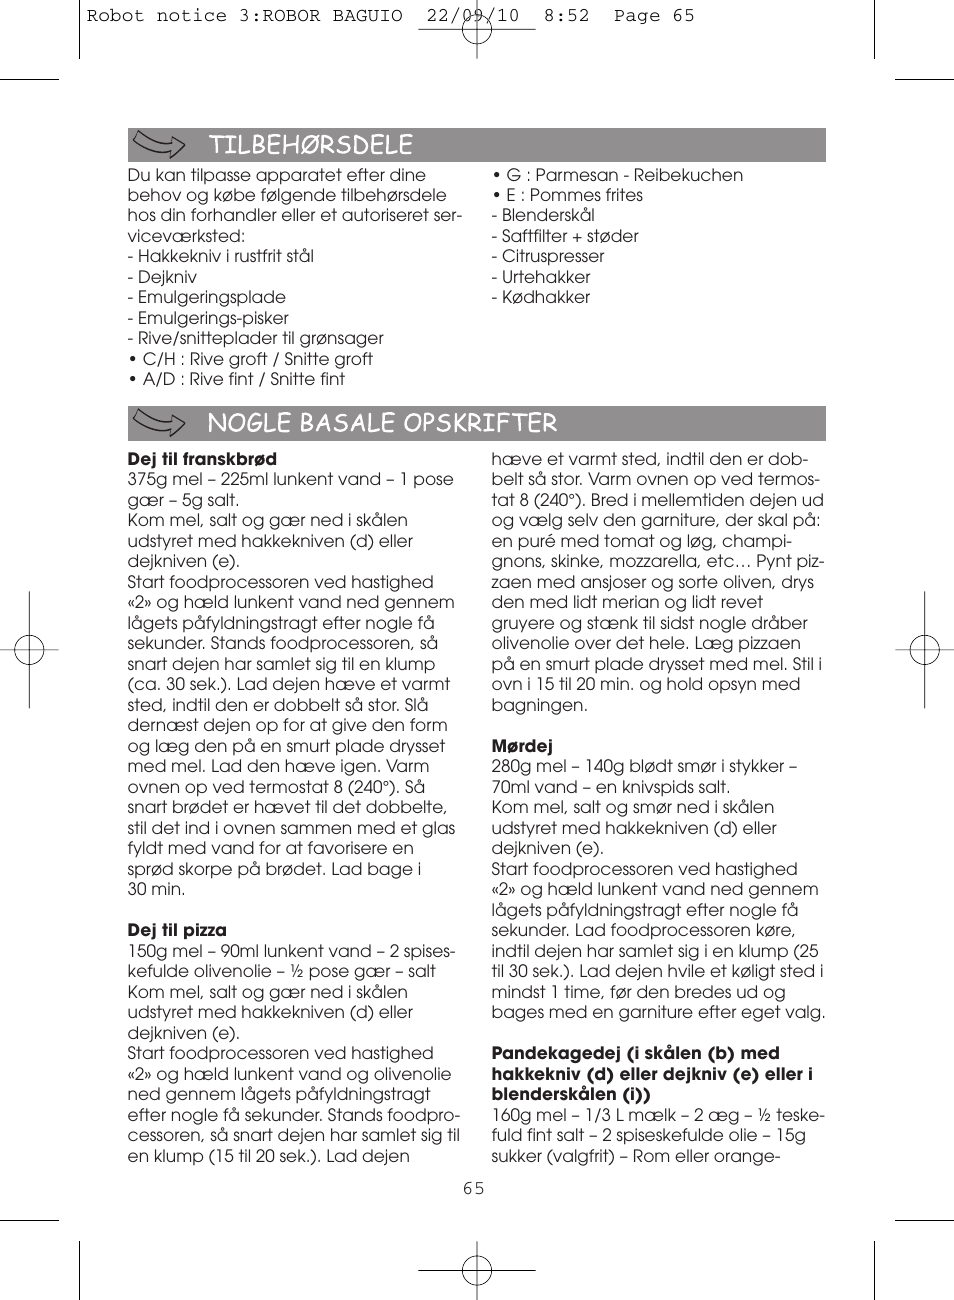 Moulinex MASTERCHEF 5000 FP518G User Manual | Page 65 / 96 | Original mode